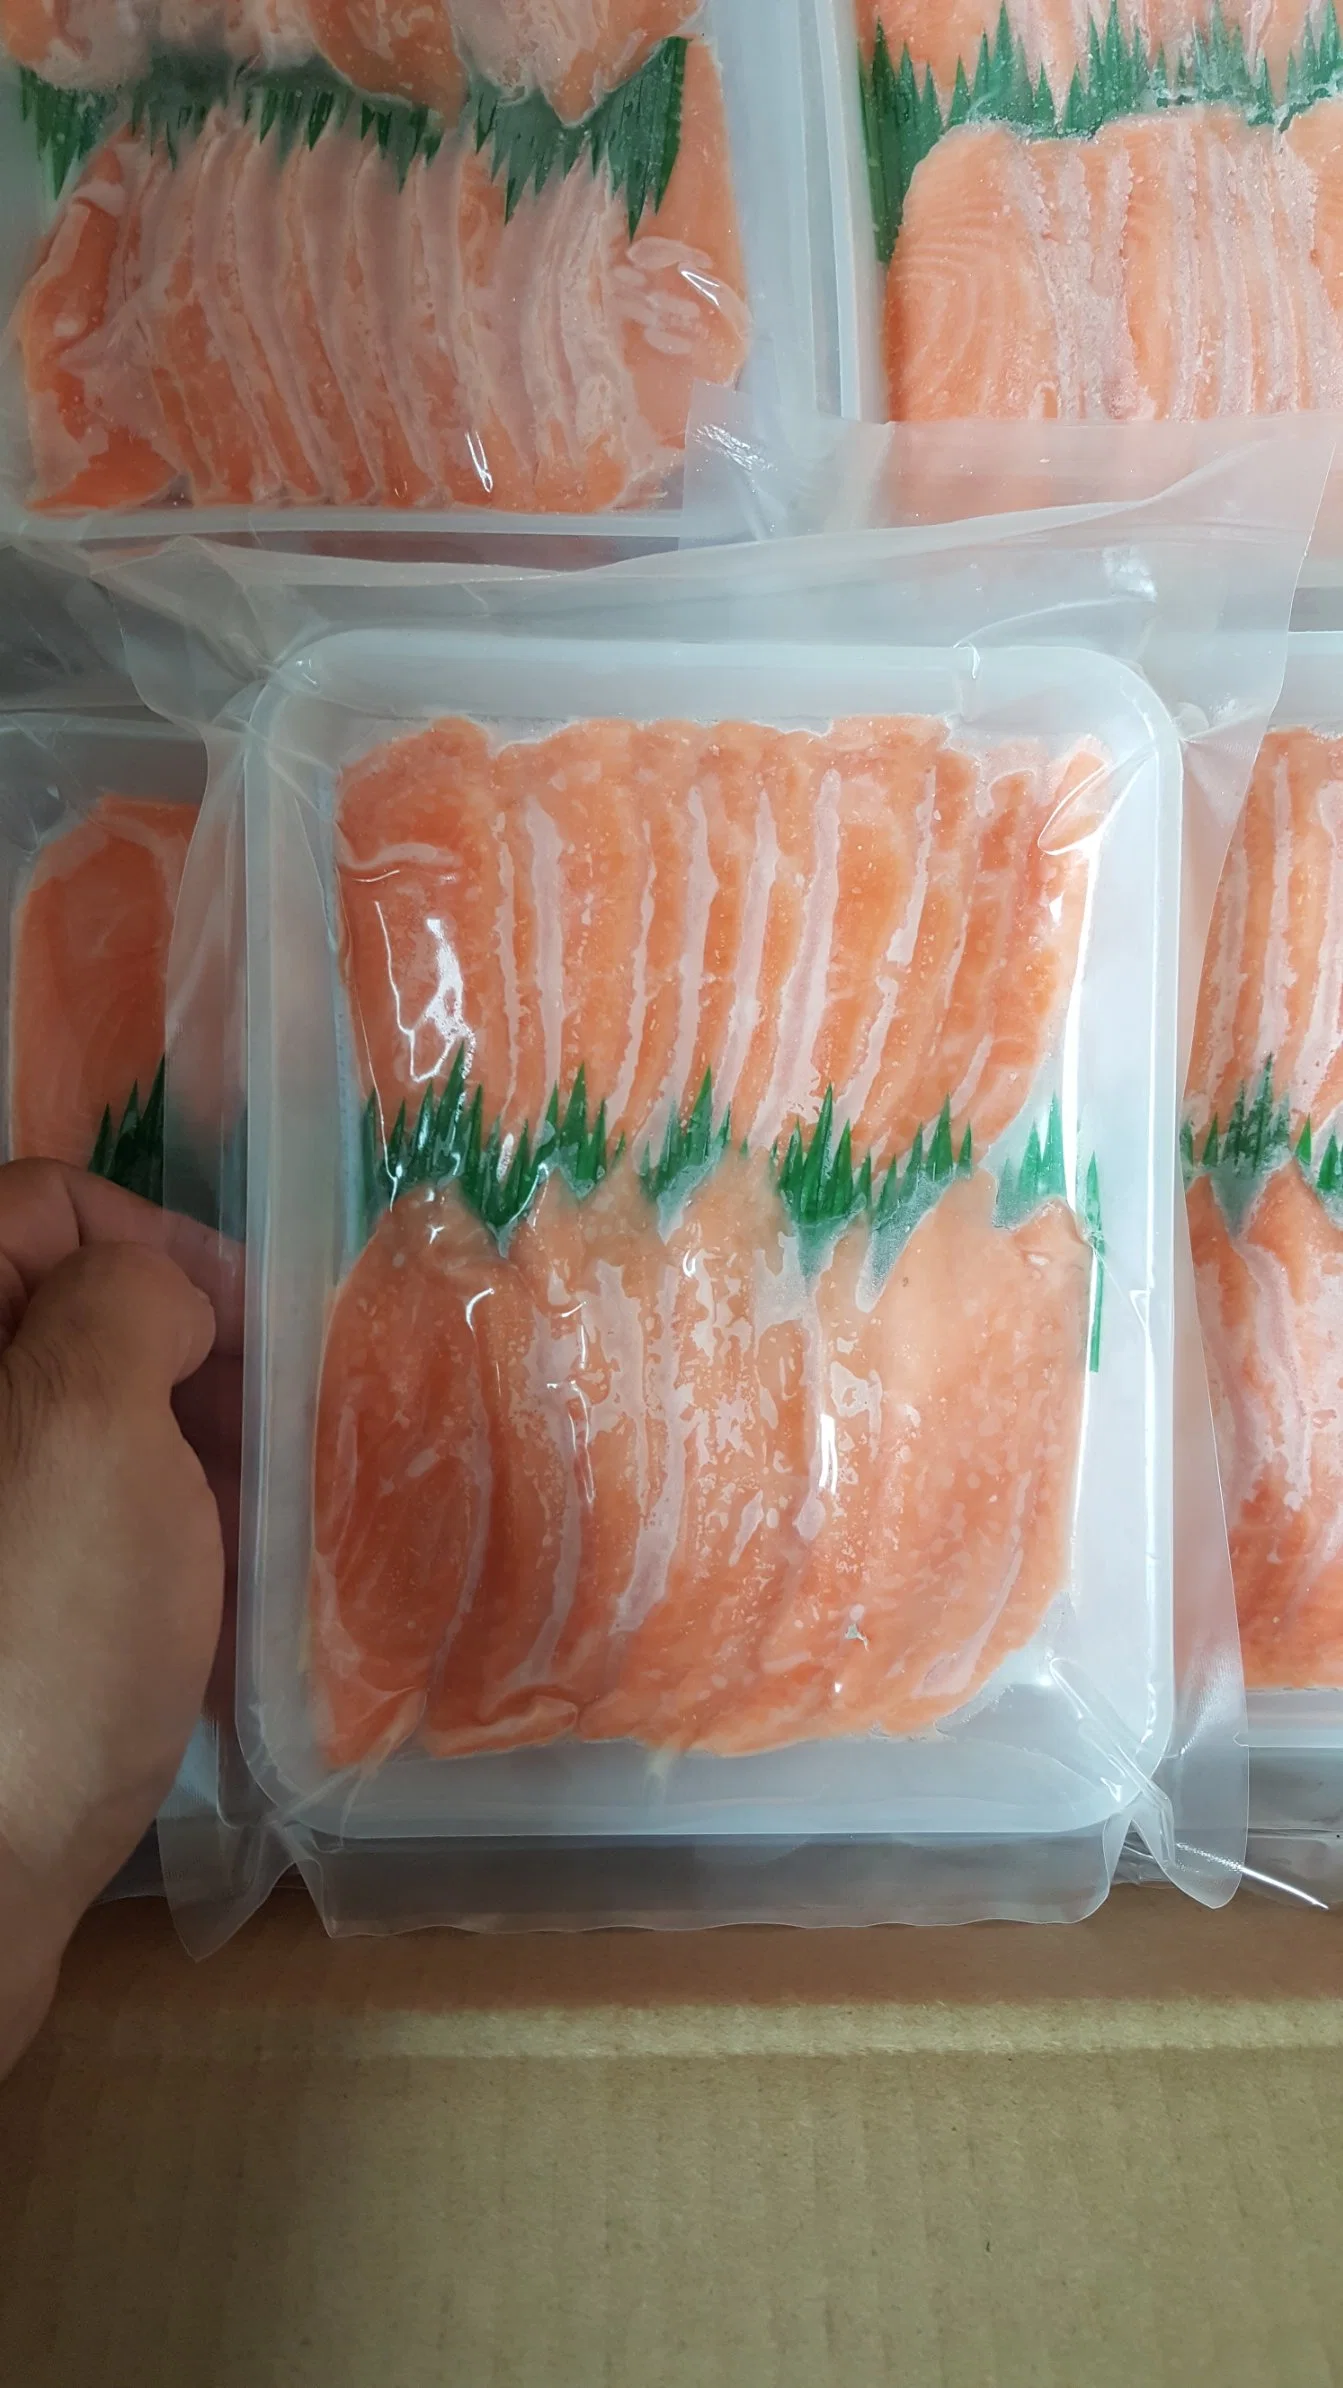 Sushi Fatia de salmão, Comida Halal. O salmão congelado.